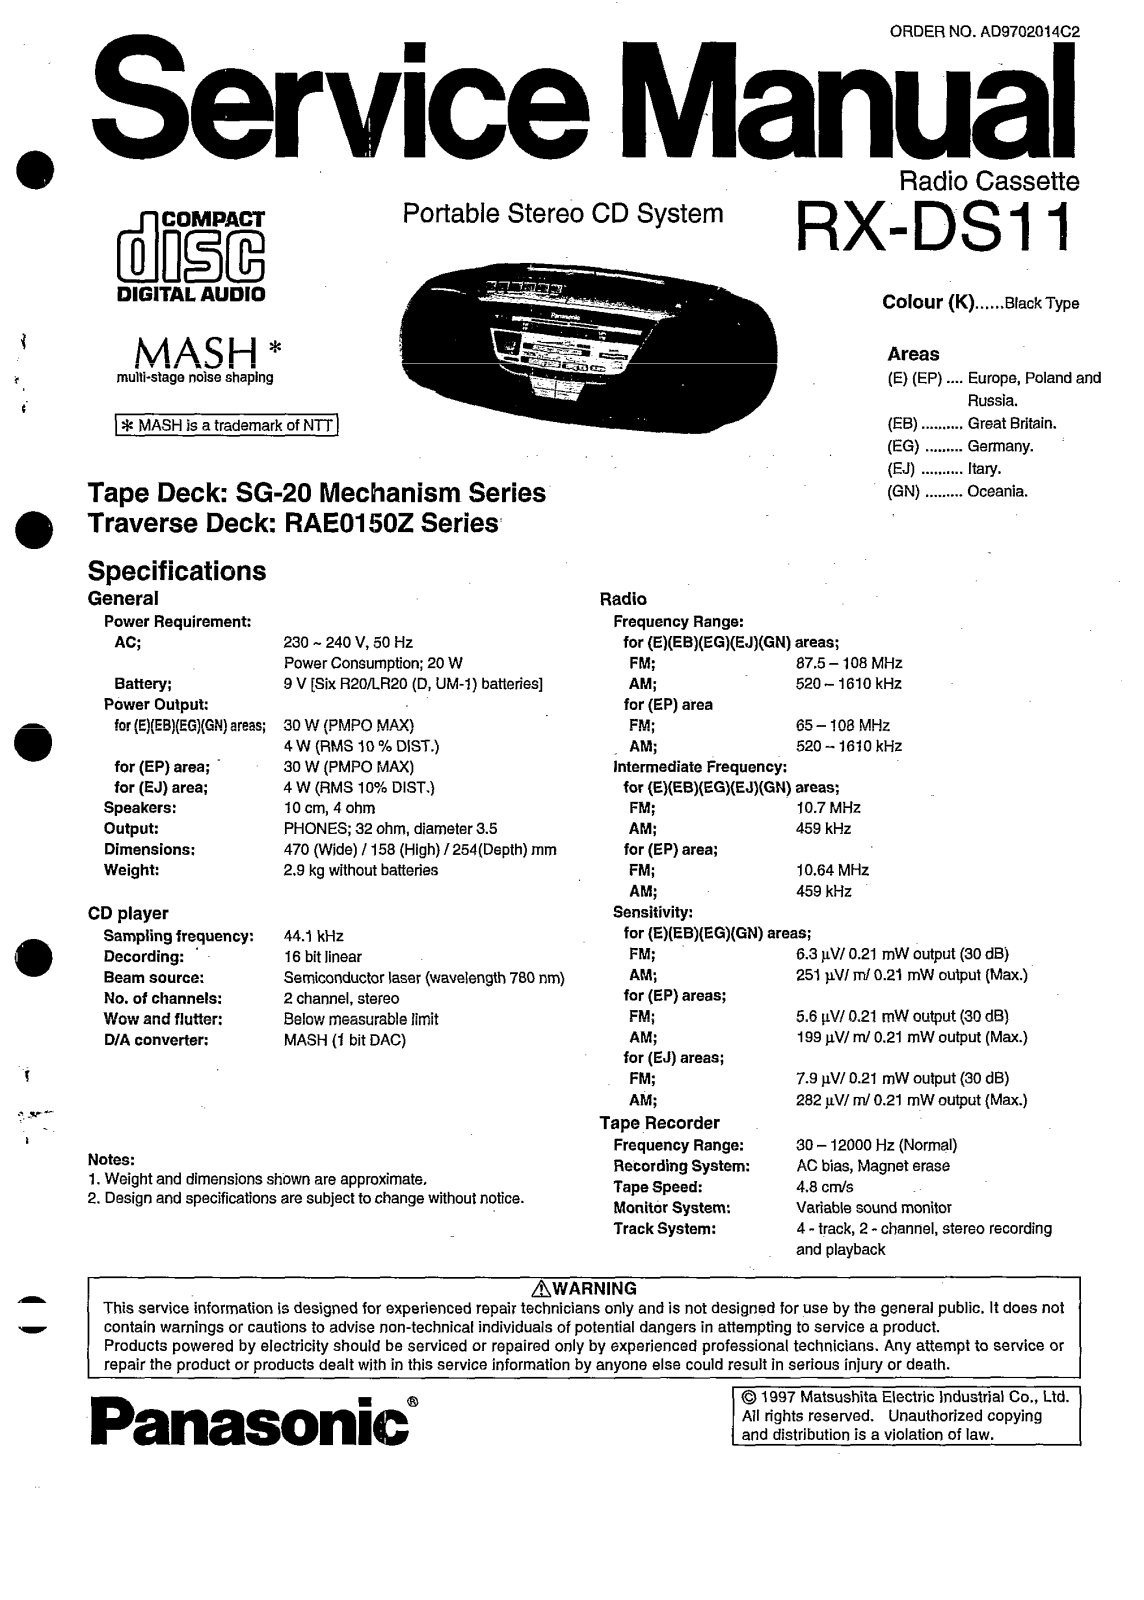 Panasonic RXDS-11 Service manual